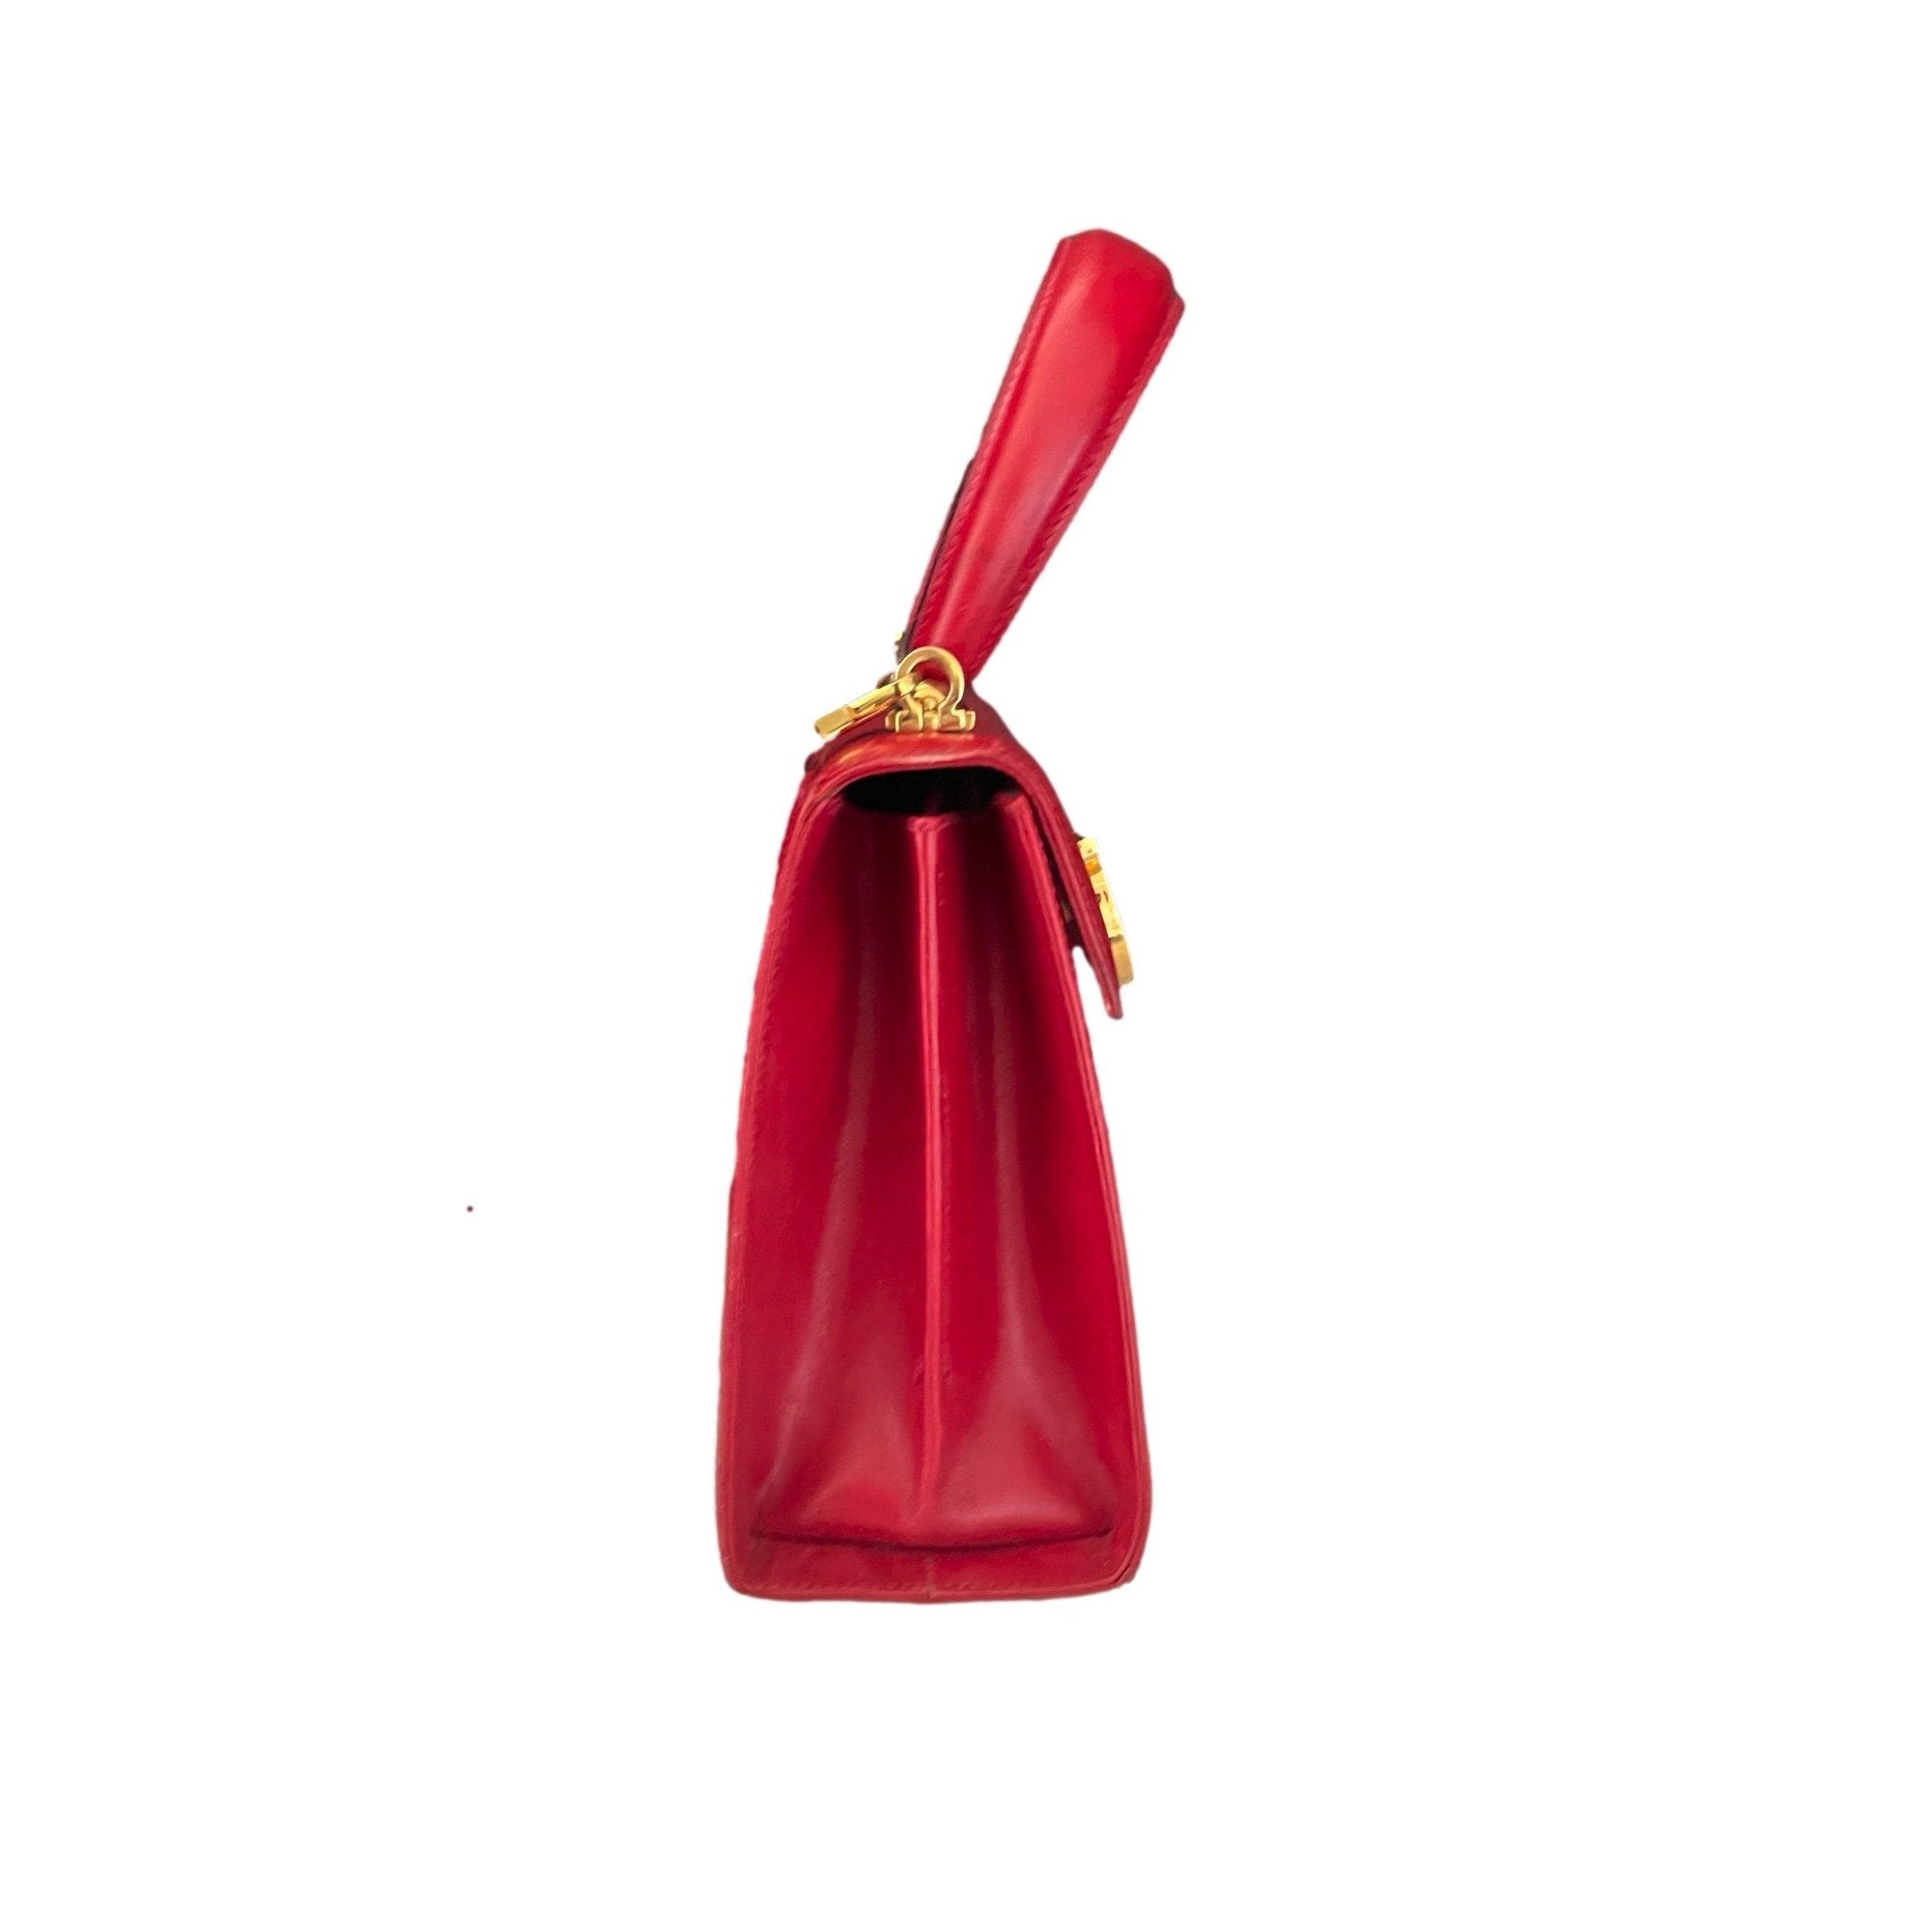 Salvatore Ferragamo Red Structured Top Handle Bag - Handbags